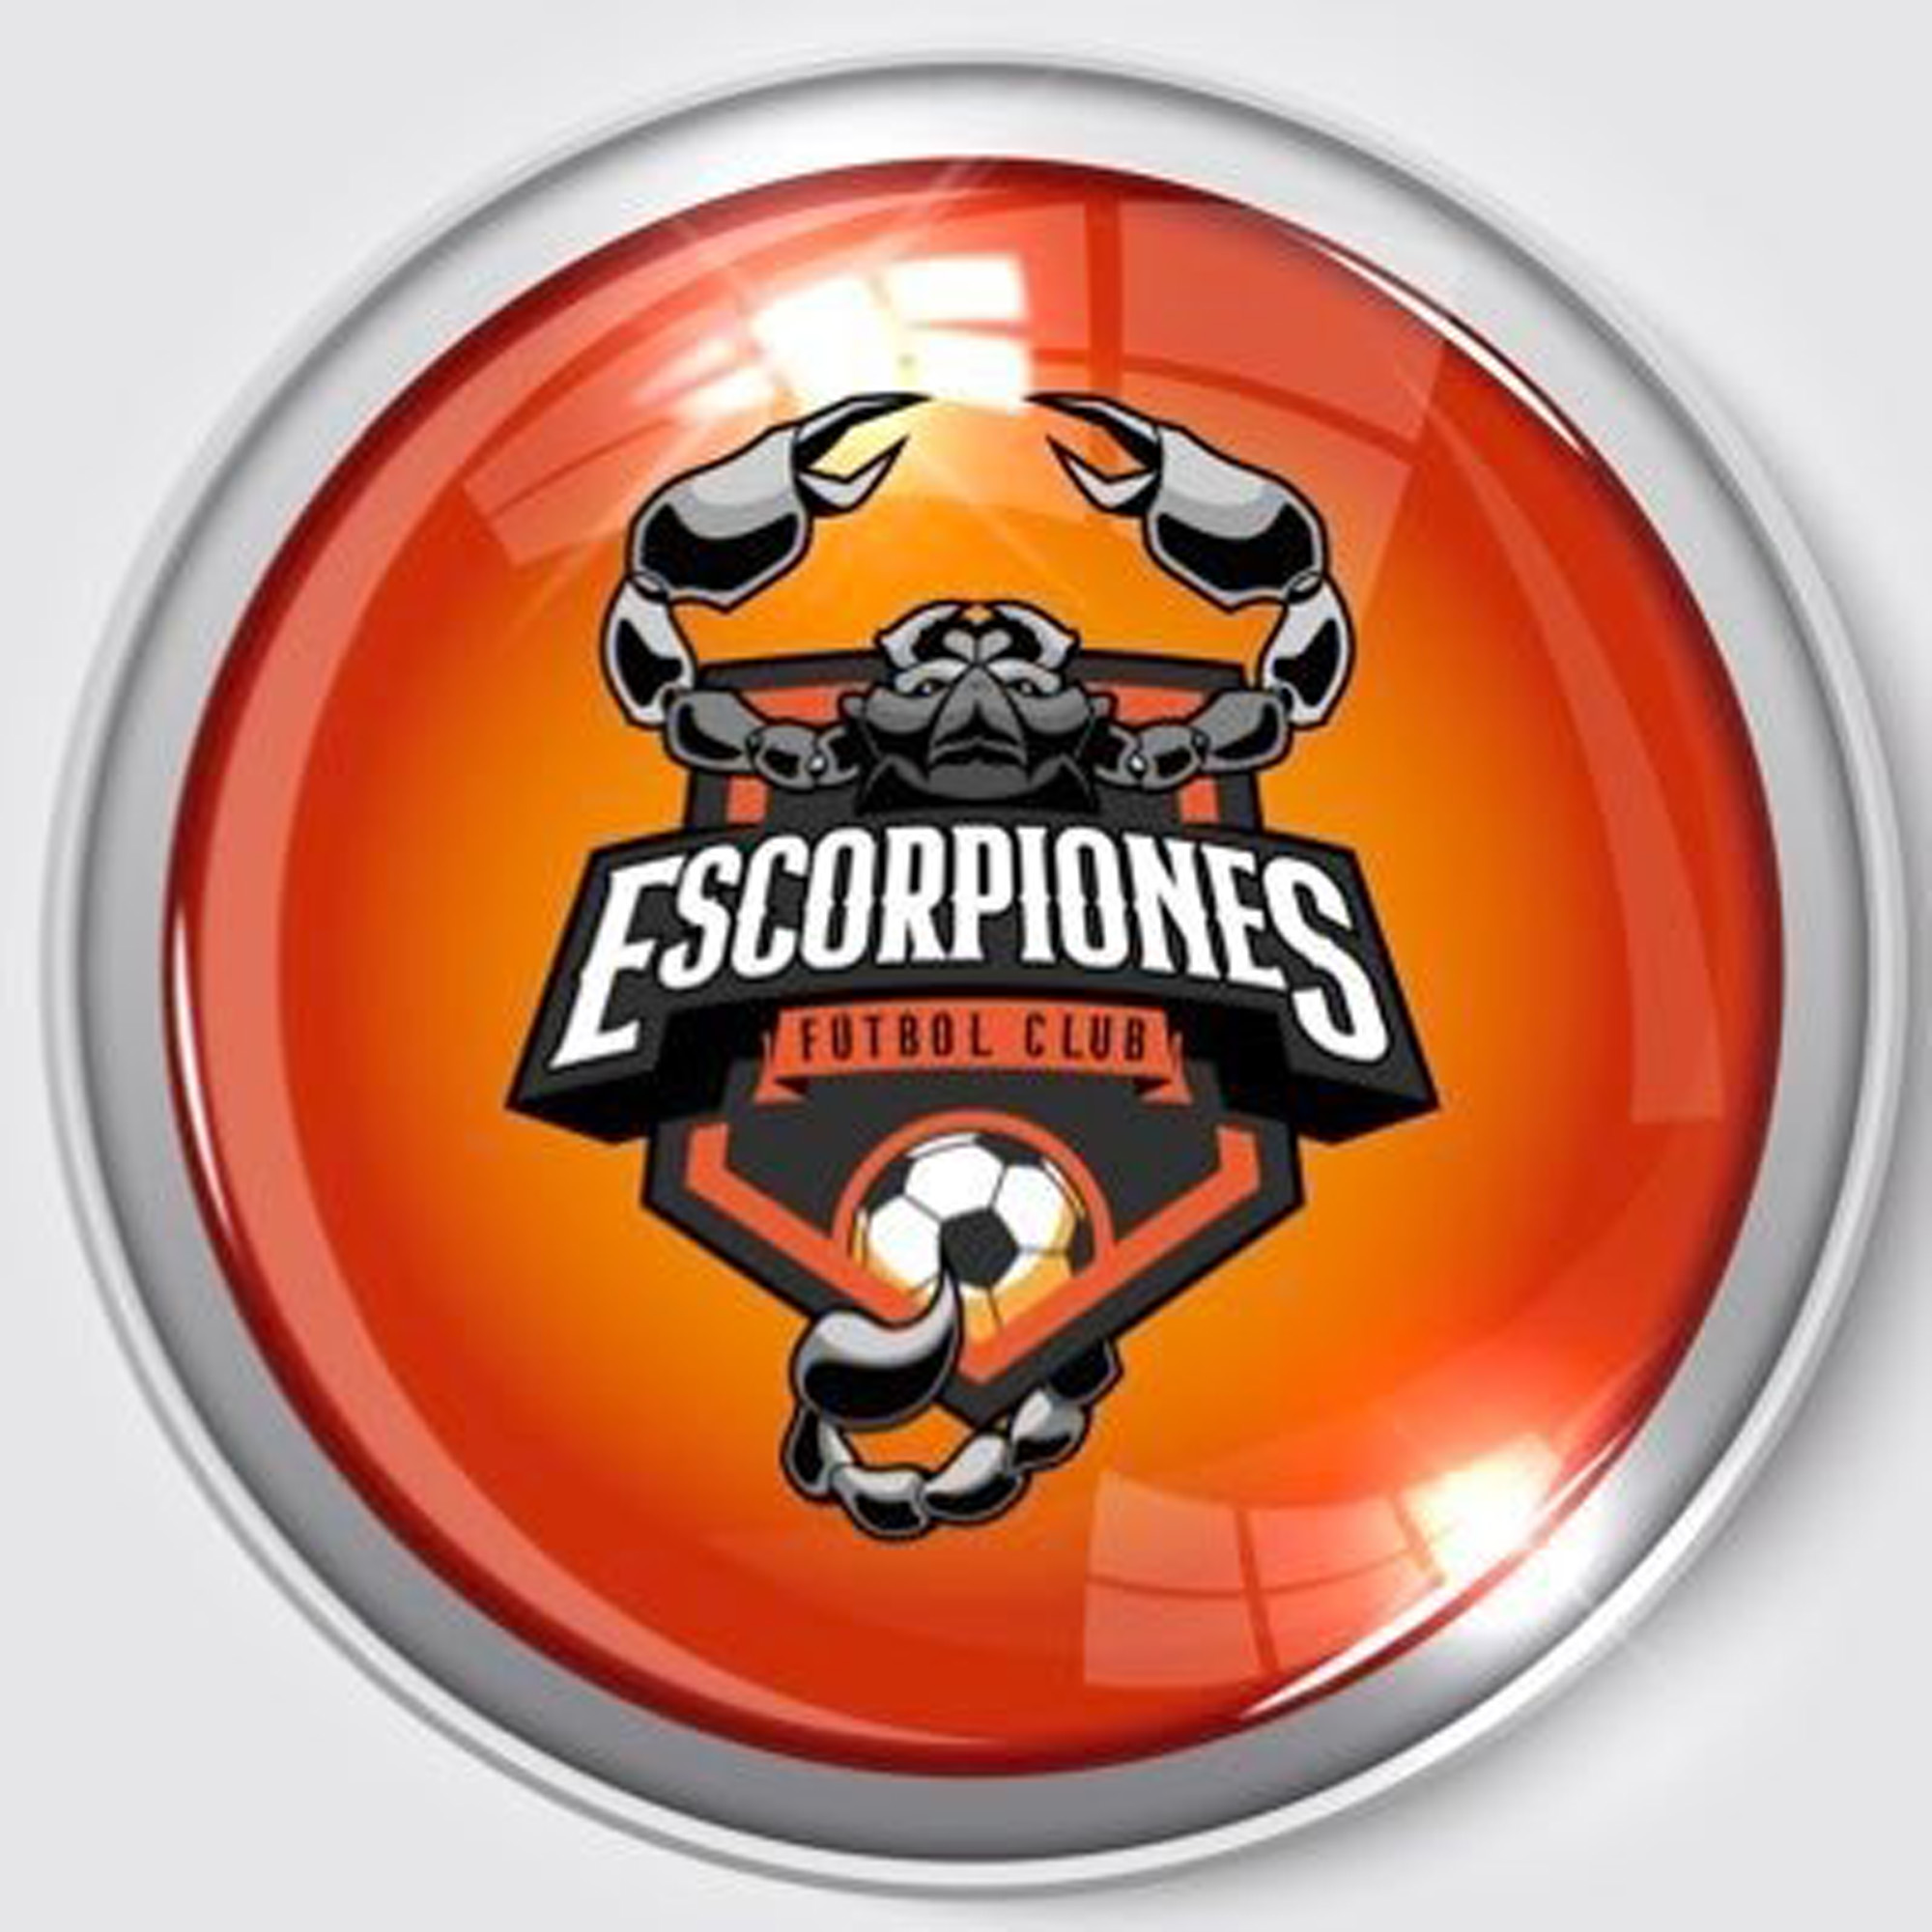 Escudo, Escorpiones Futbol Club